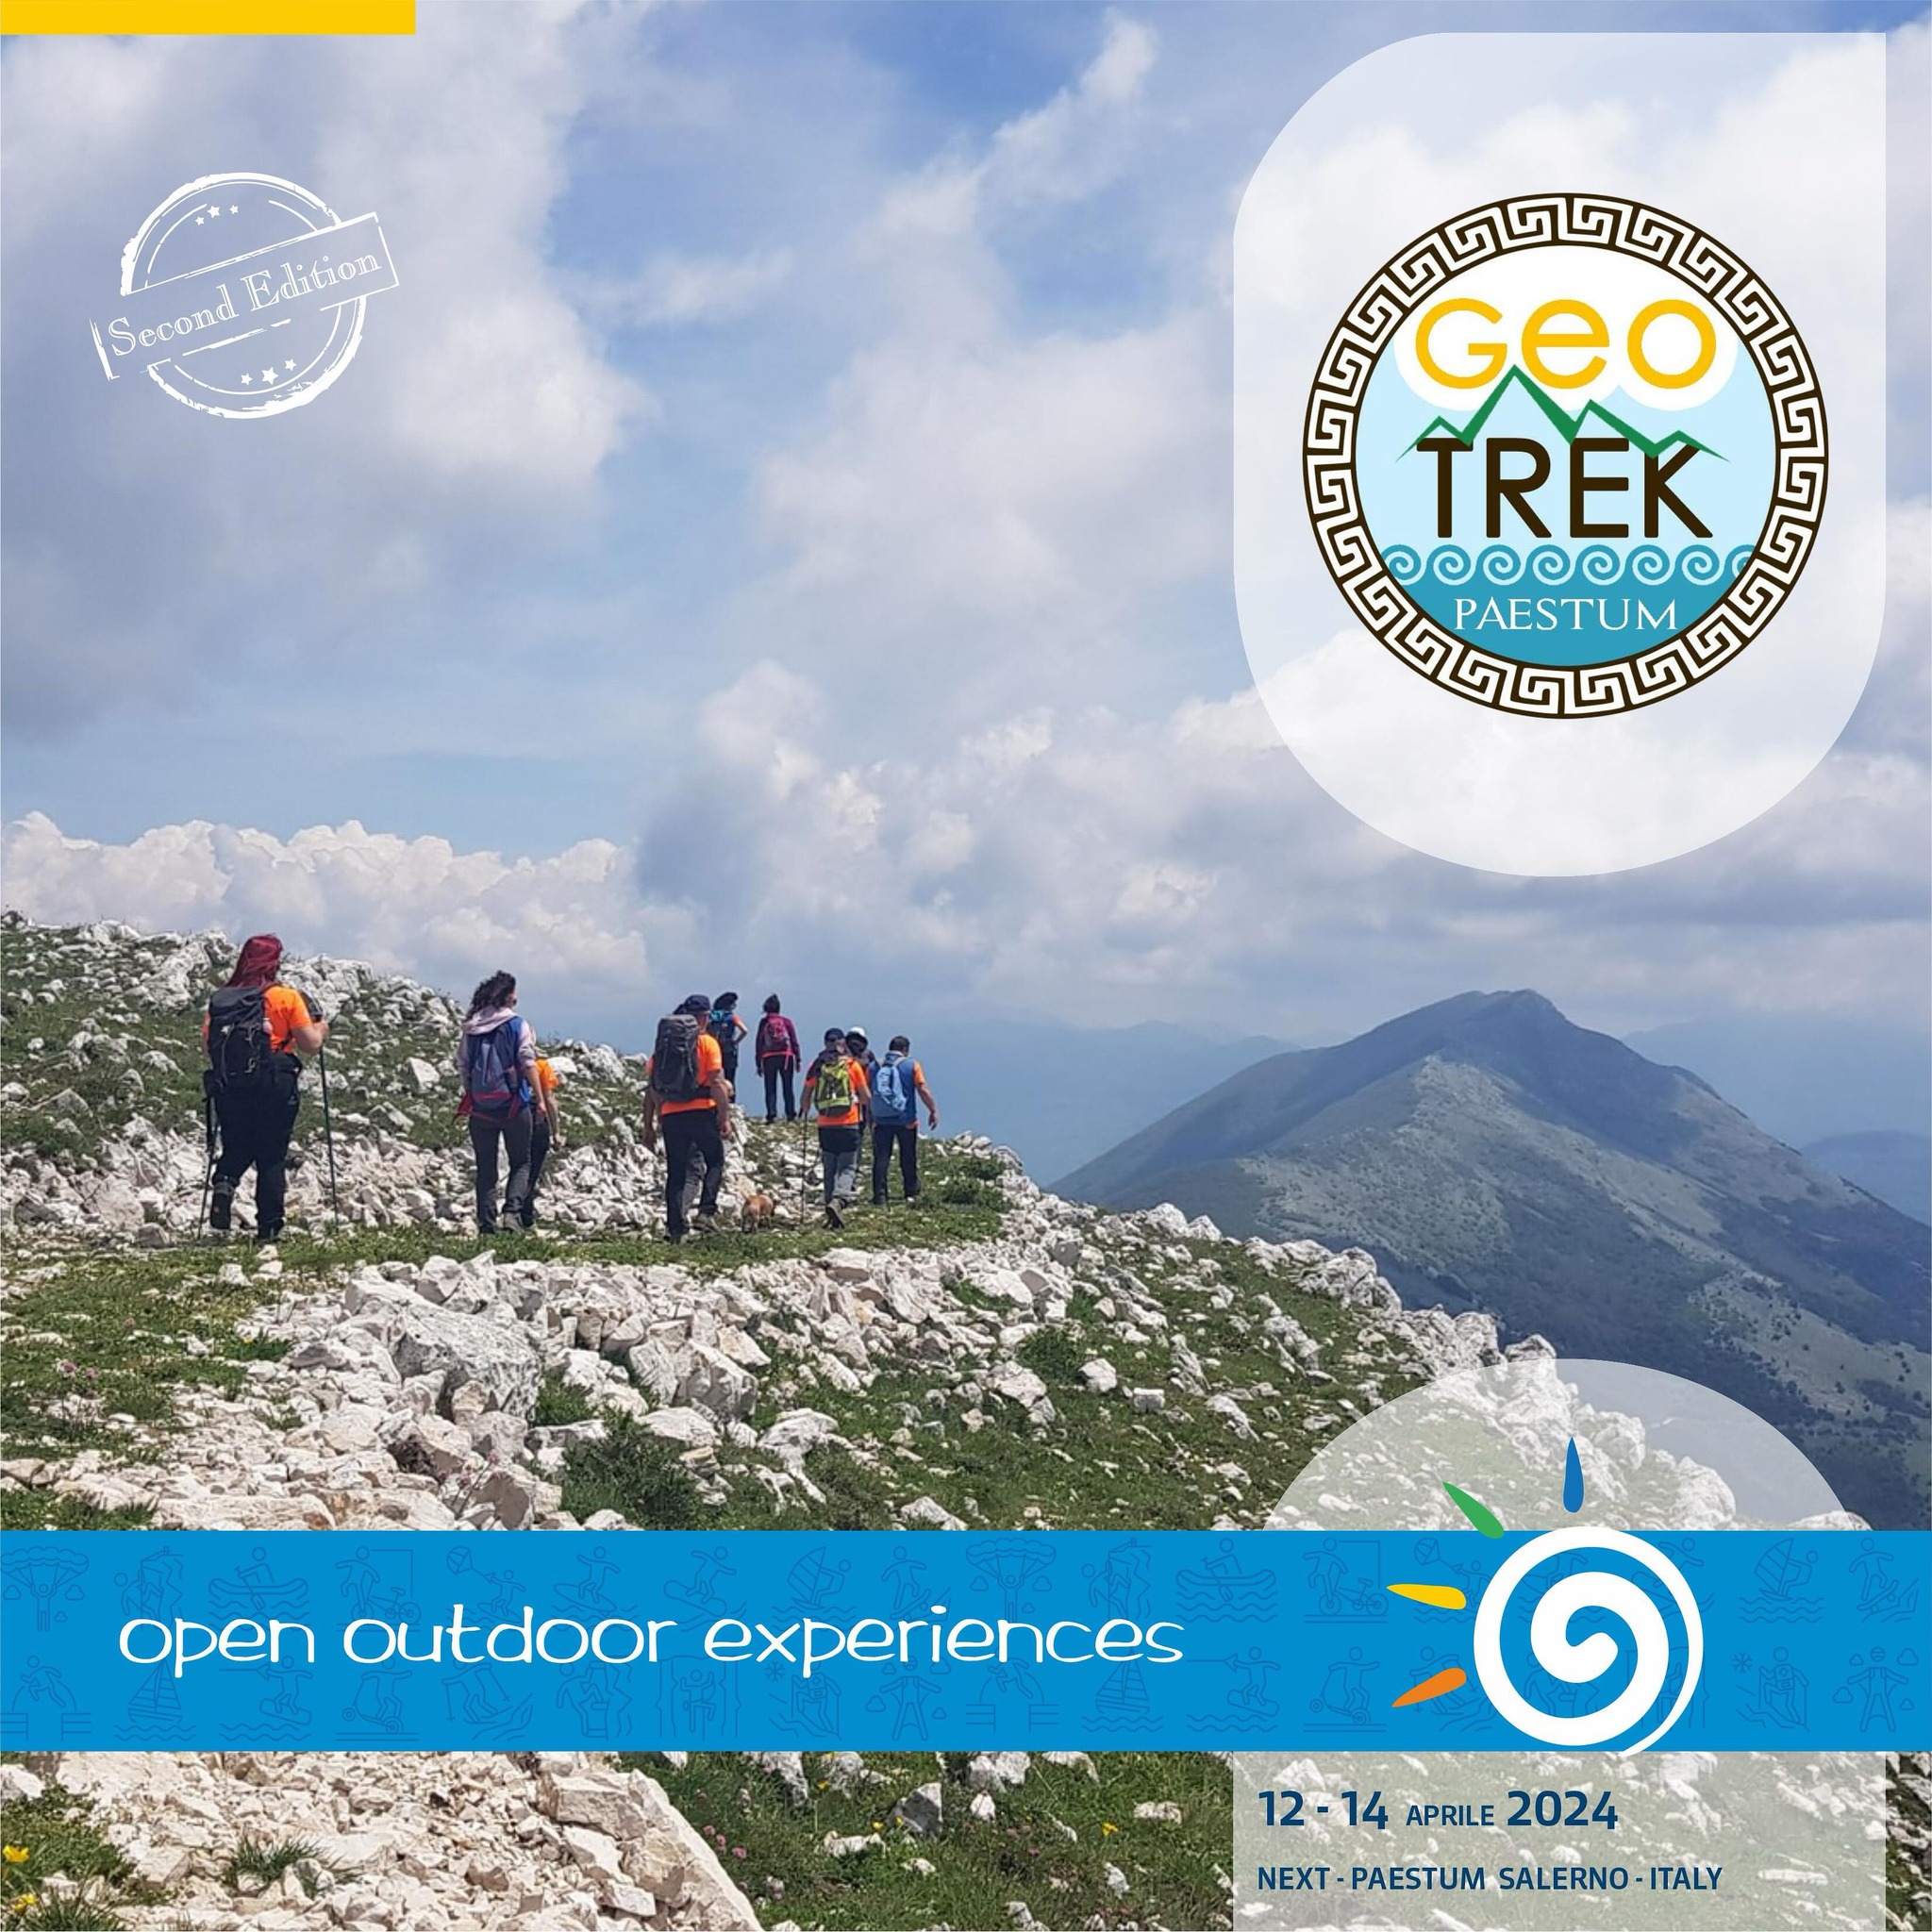 Siamo felici di comunicarvi che dopo la stimolante collaborazione della prima edizione di OPEN, l’Associazione Geo Trek Paestum